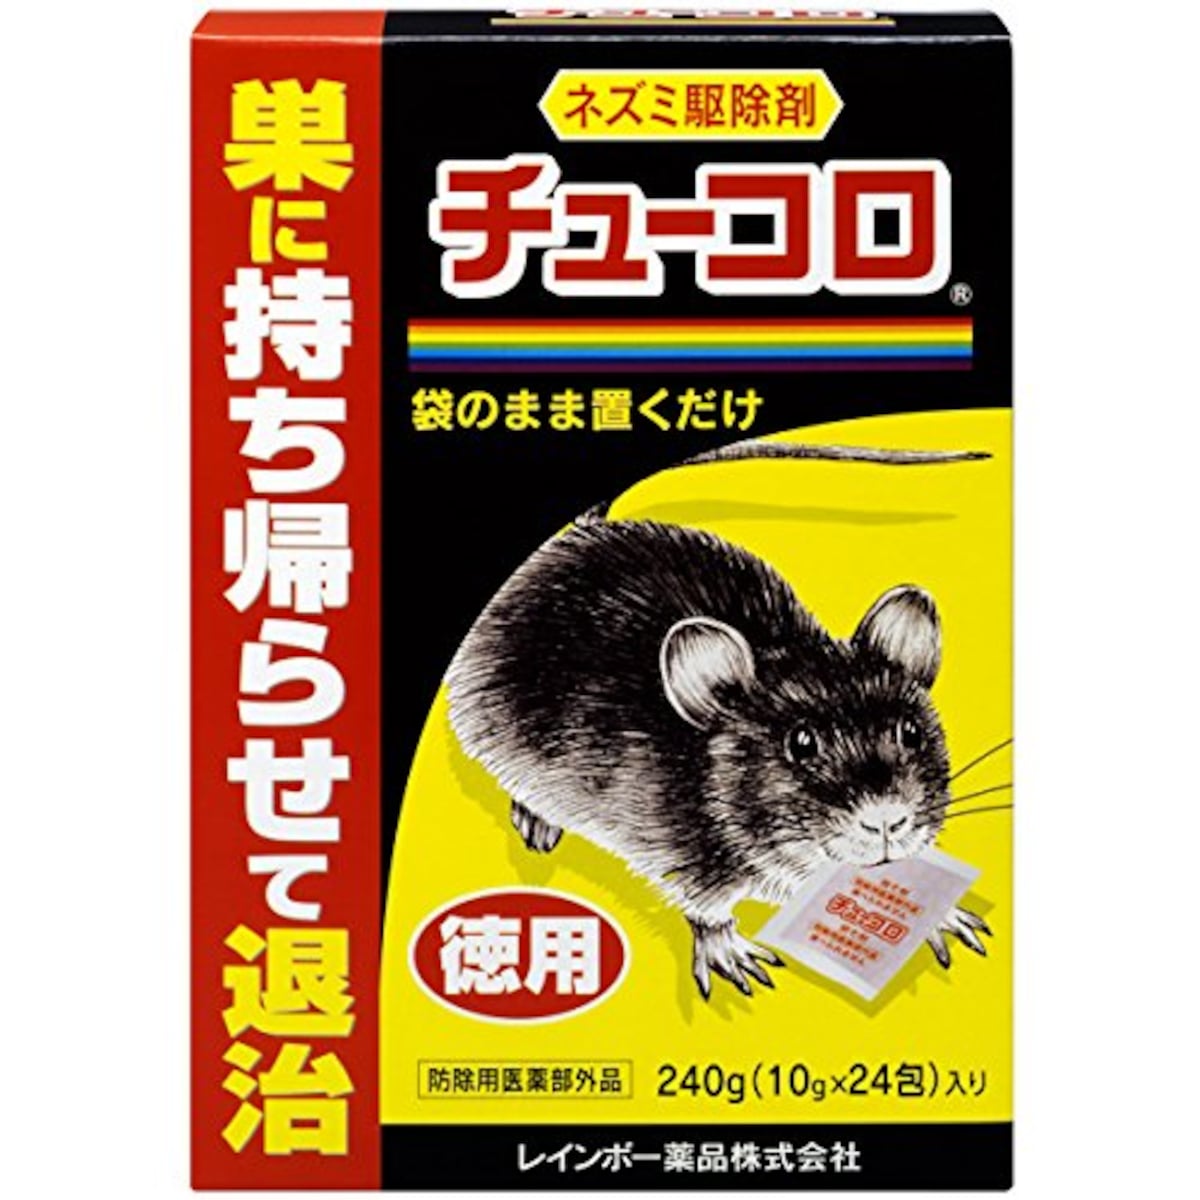 ネズミ駆除剤 チューコロ